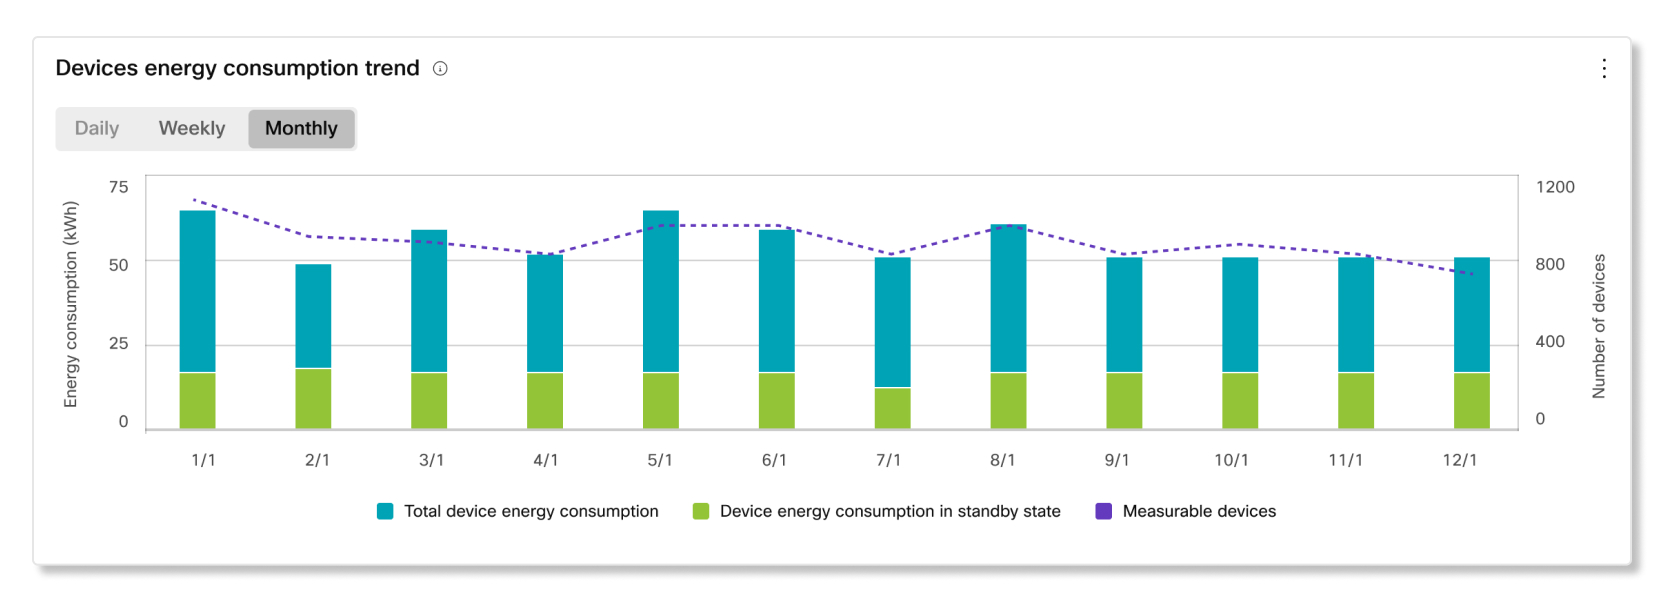 Tendance de la consommation d’énergie des appareils dans les analyses de durabilité